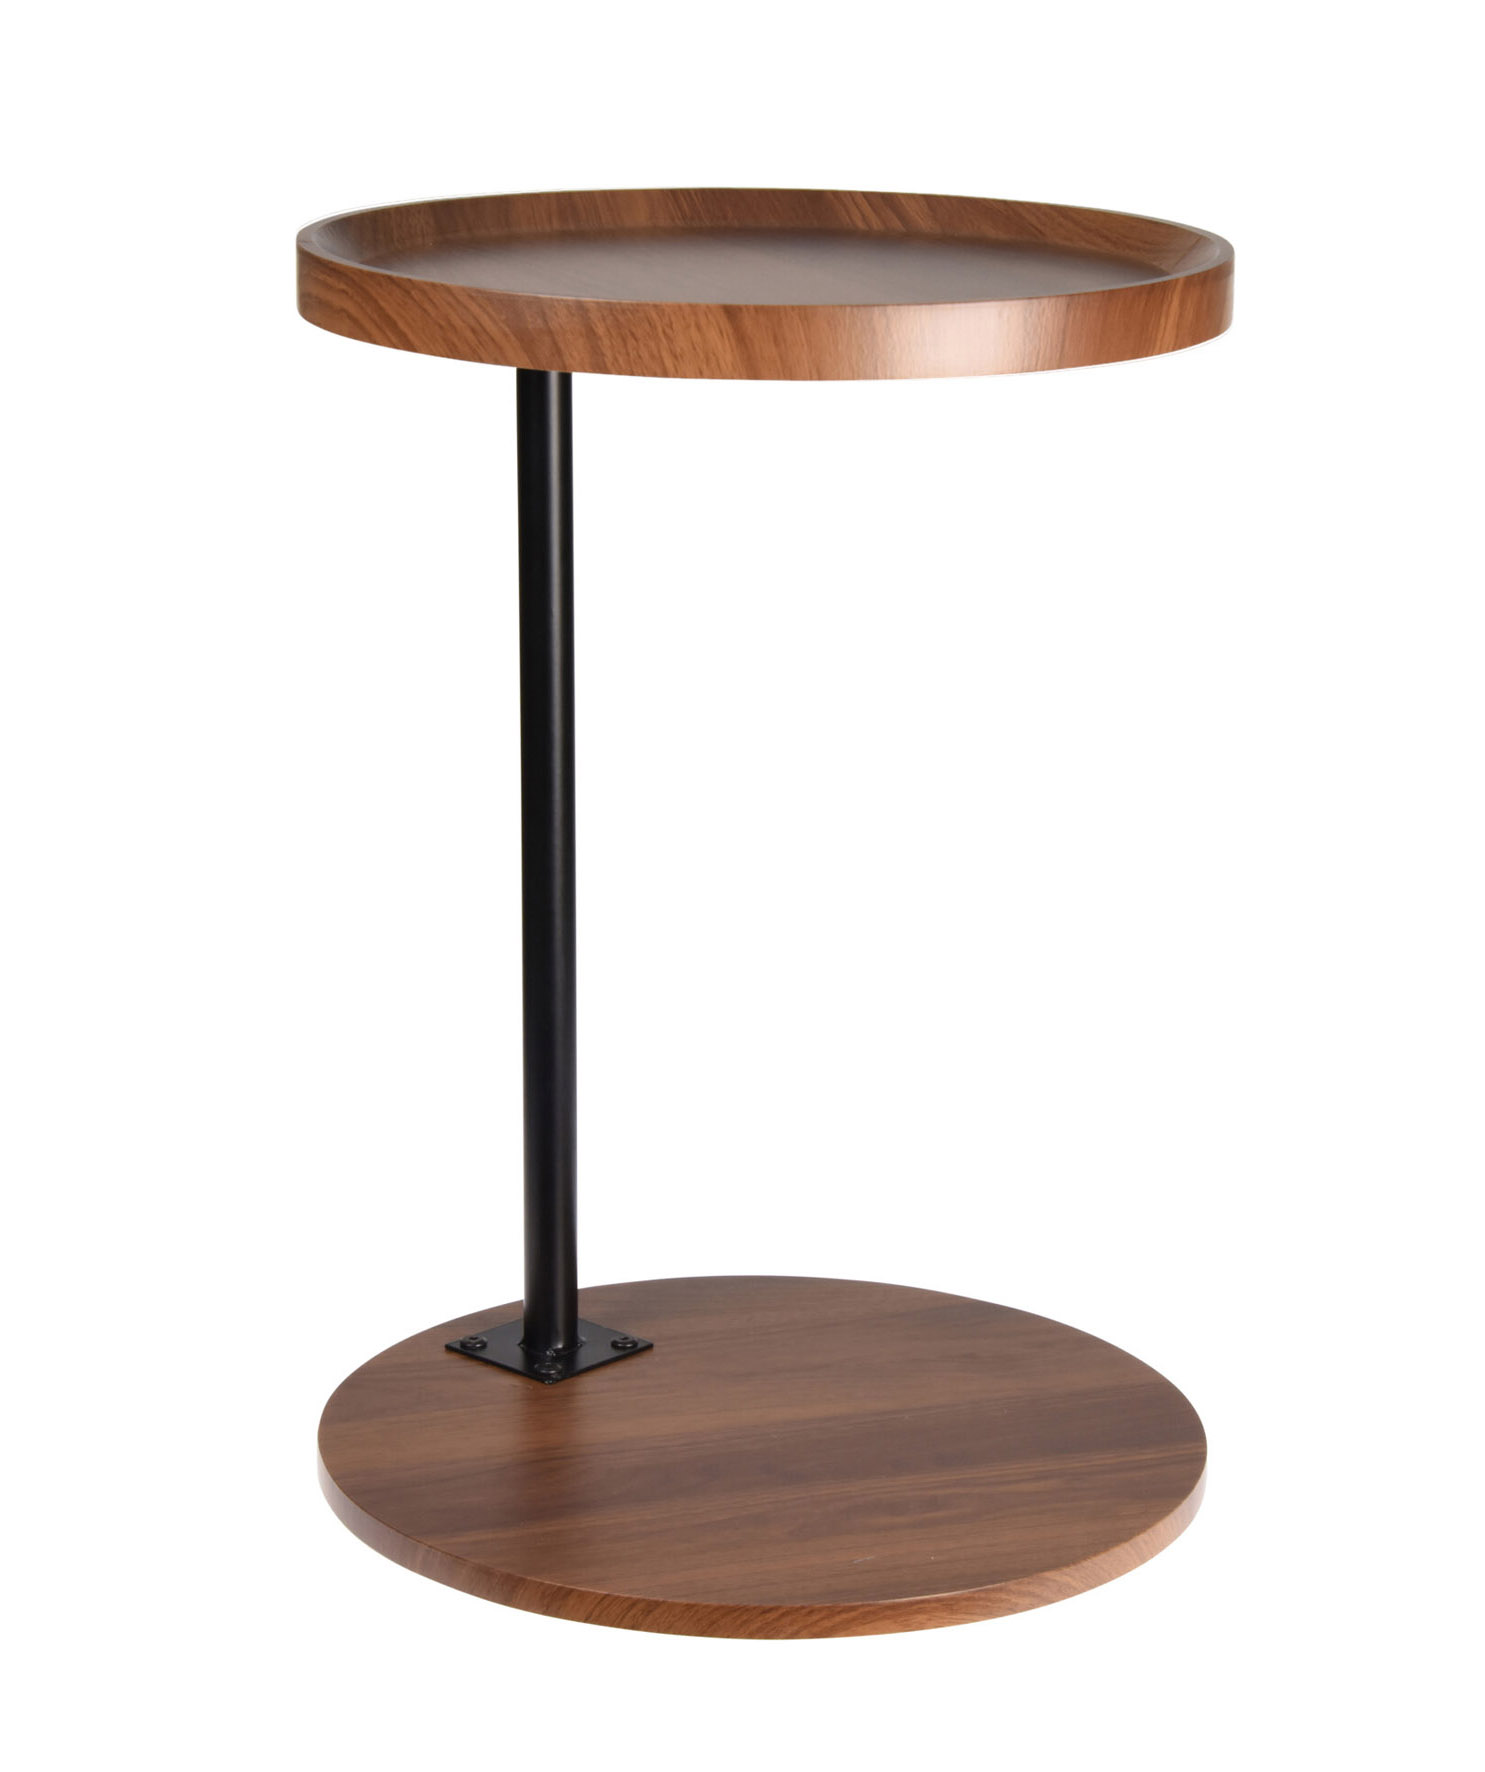 Holz Beistelltisch braun / schwarz - 40 cm - Tisch zum Zustellen oder Dekorieren